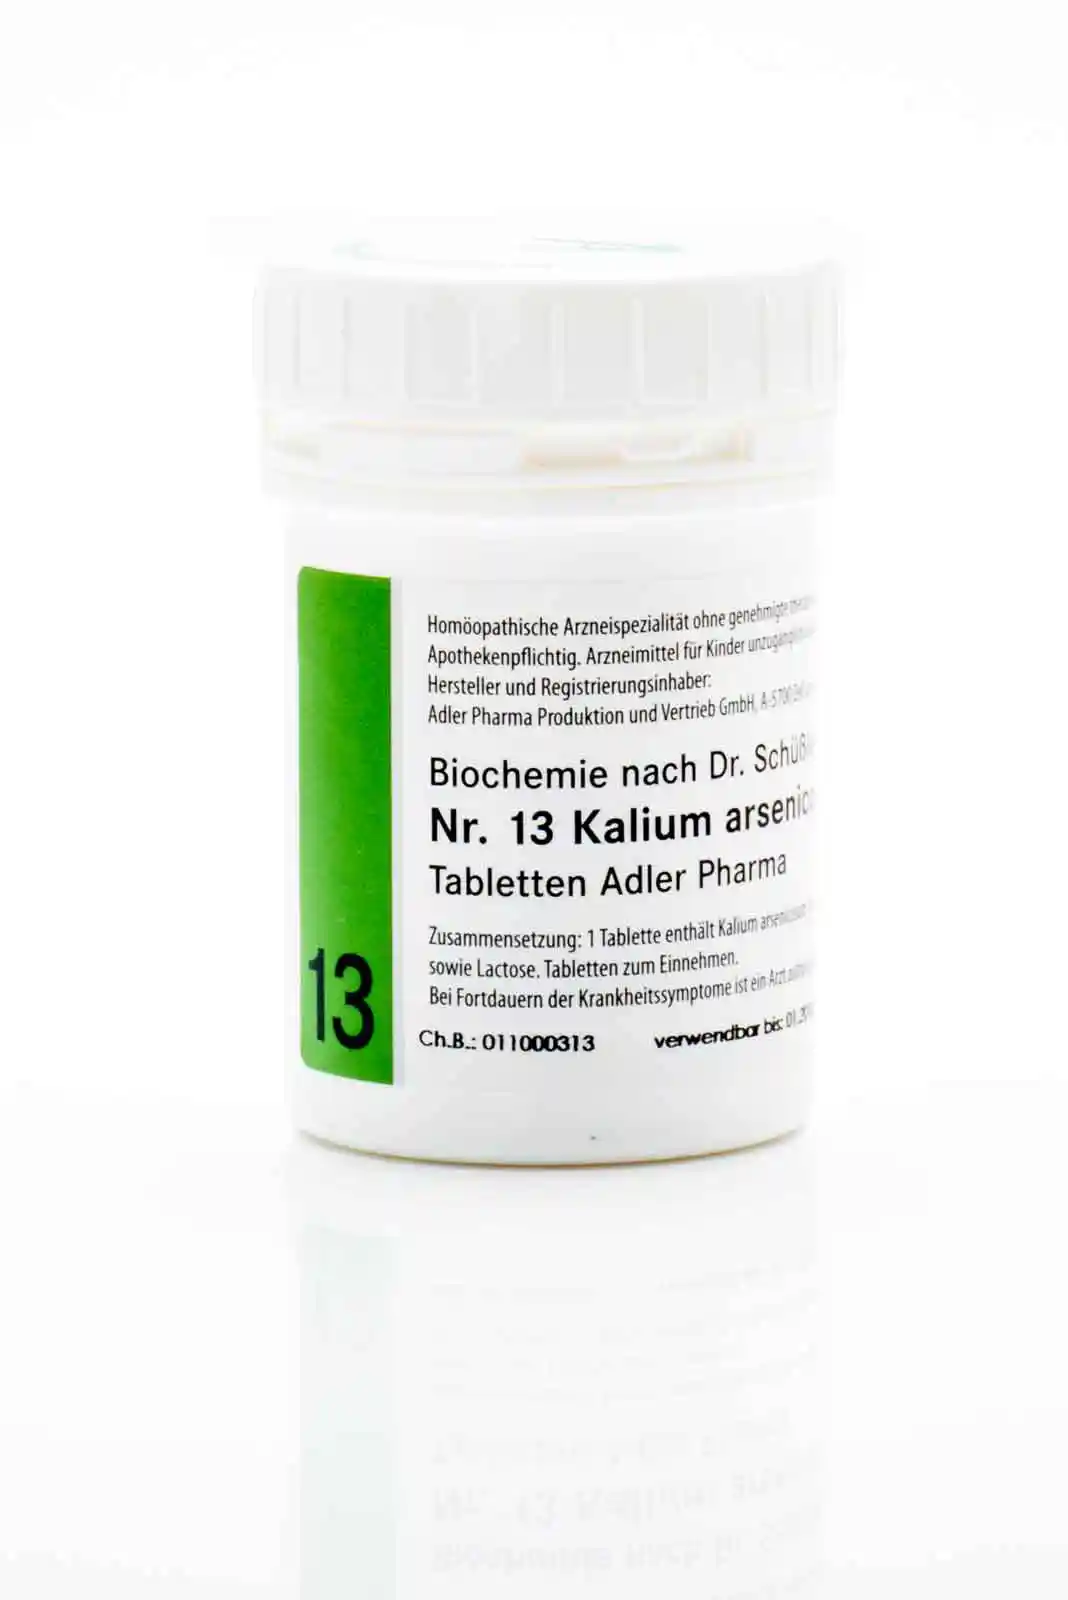 Nr. 13 Kalium arsenicosum D12